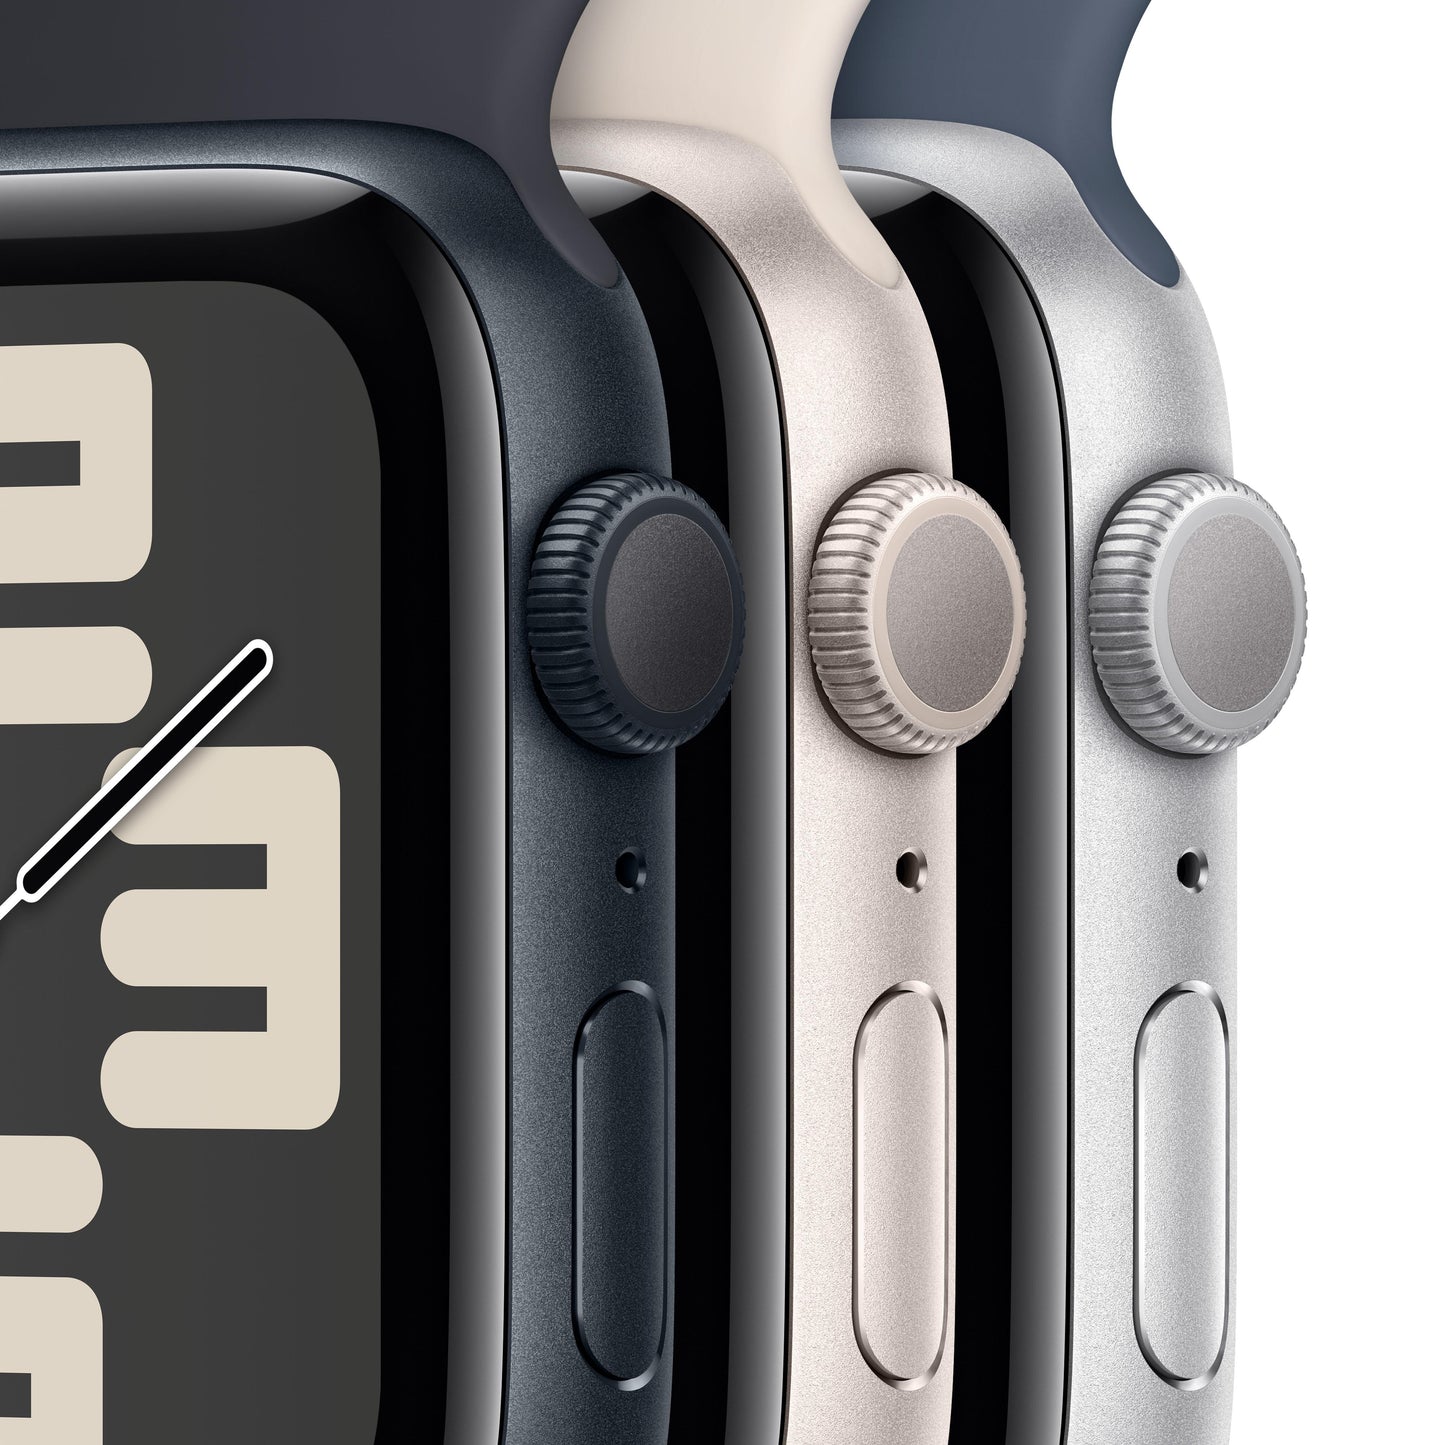 Apple Watch SE (GPS) - Caja de aluminio en color medianoche de 44 mm - Correa Loop deportiva color medianoche